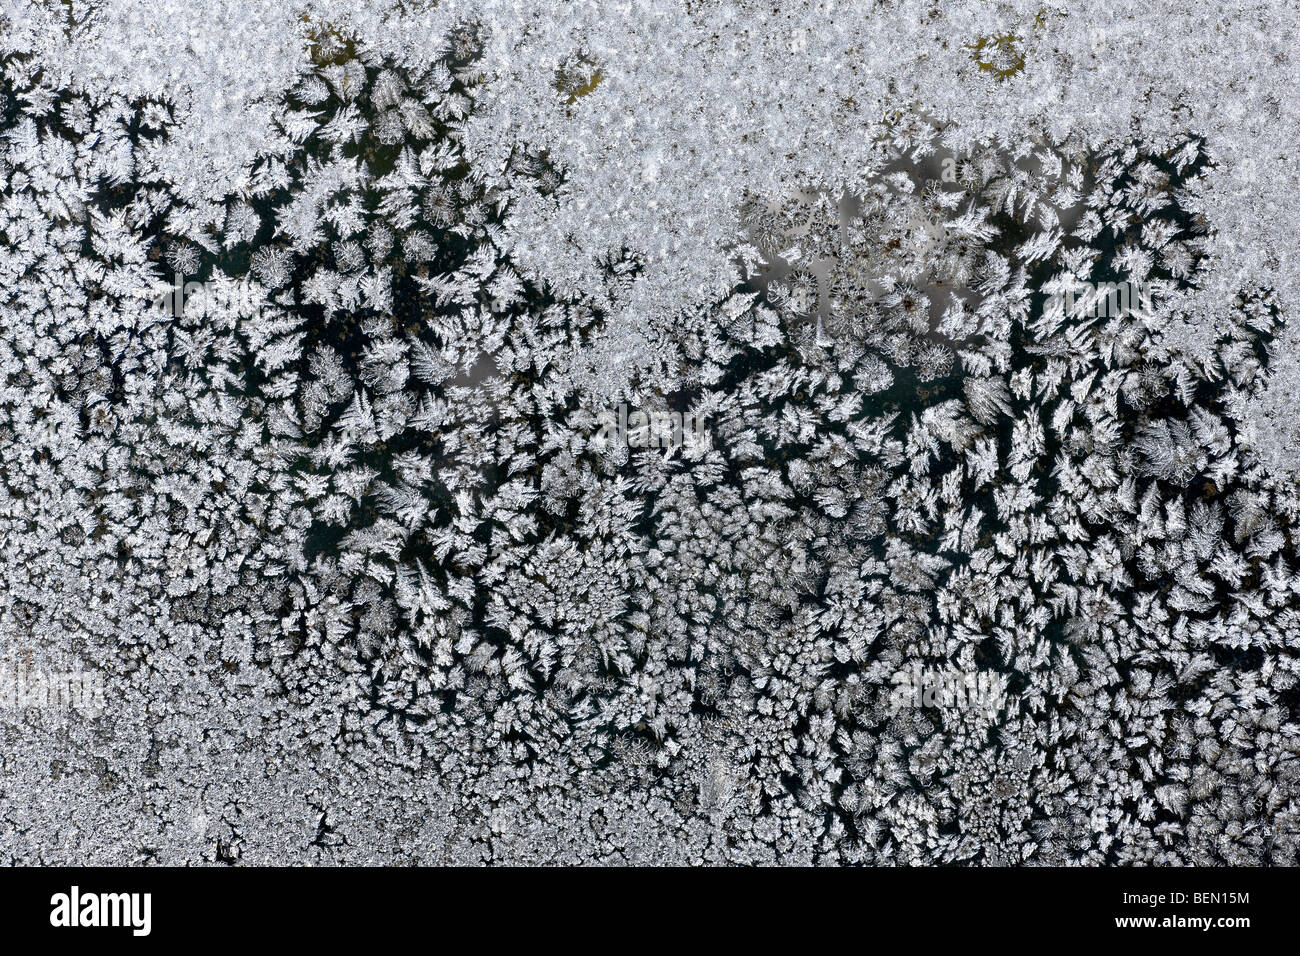 Cristaux de glace / fleurs de givre sur la fenêtre gelés en hiver, Belgique Banque D'Images